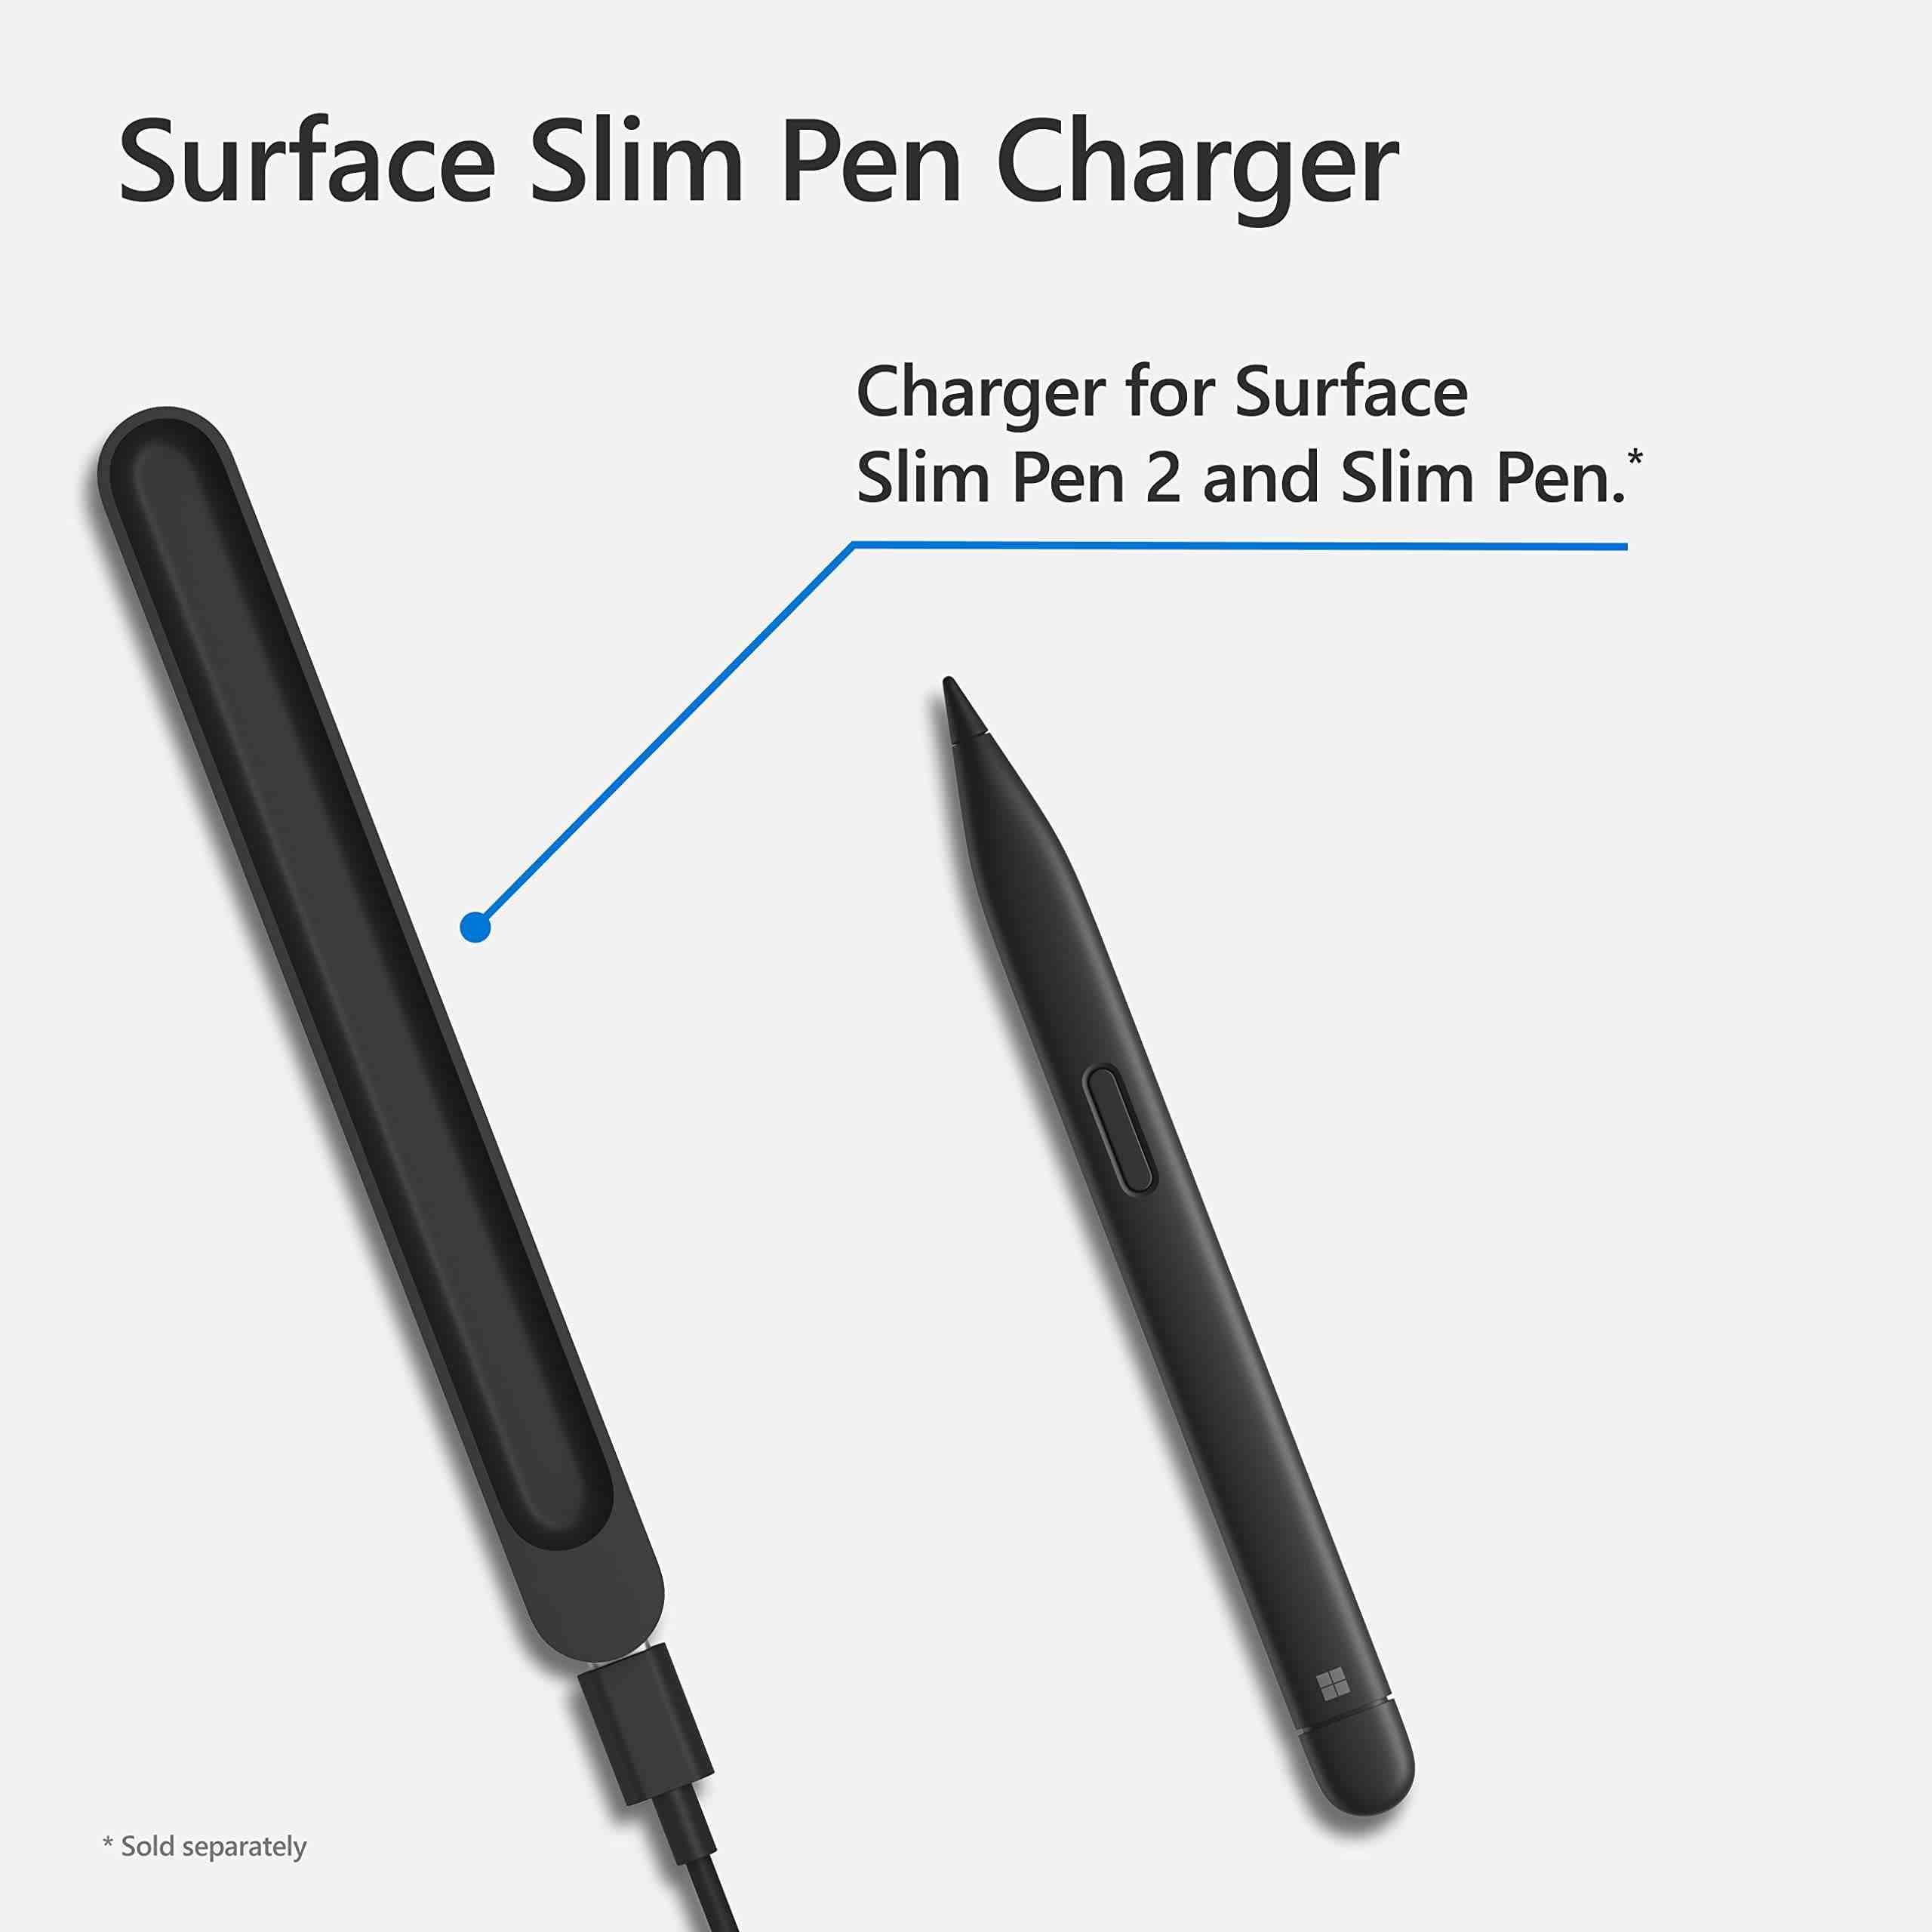 Sạc cho bút Surface Slim Pen 1 và Slim Pen 2